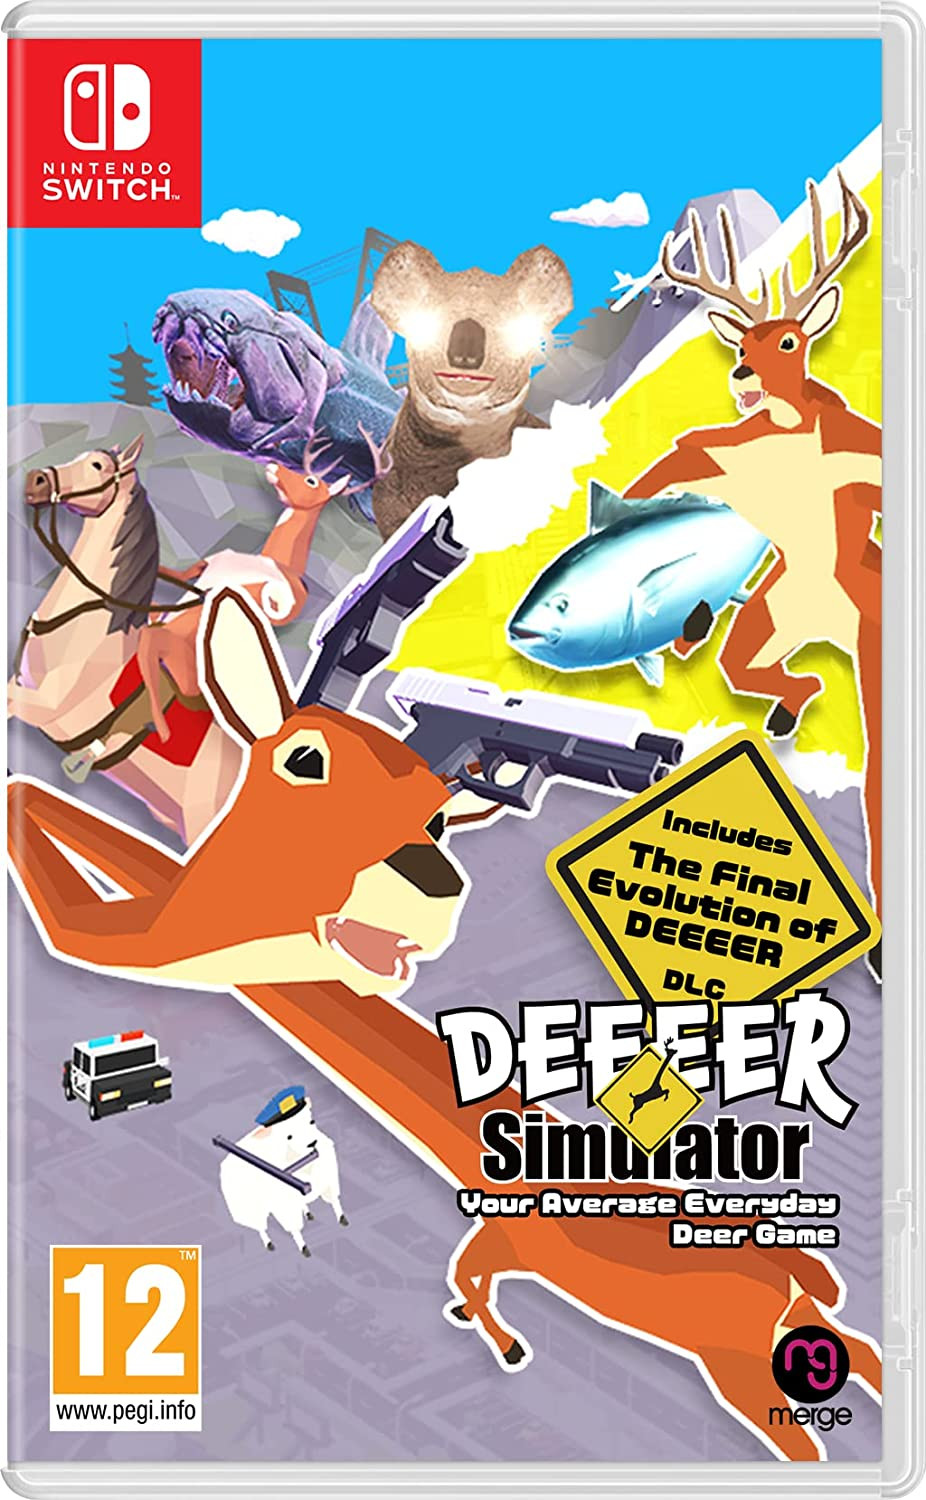 Deeeer Simulator - Your Average Everyday Deer Game